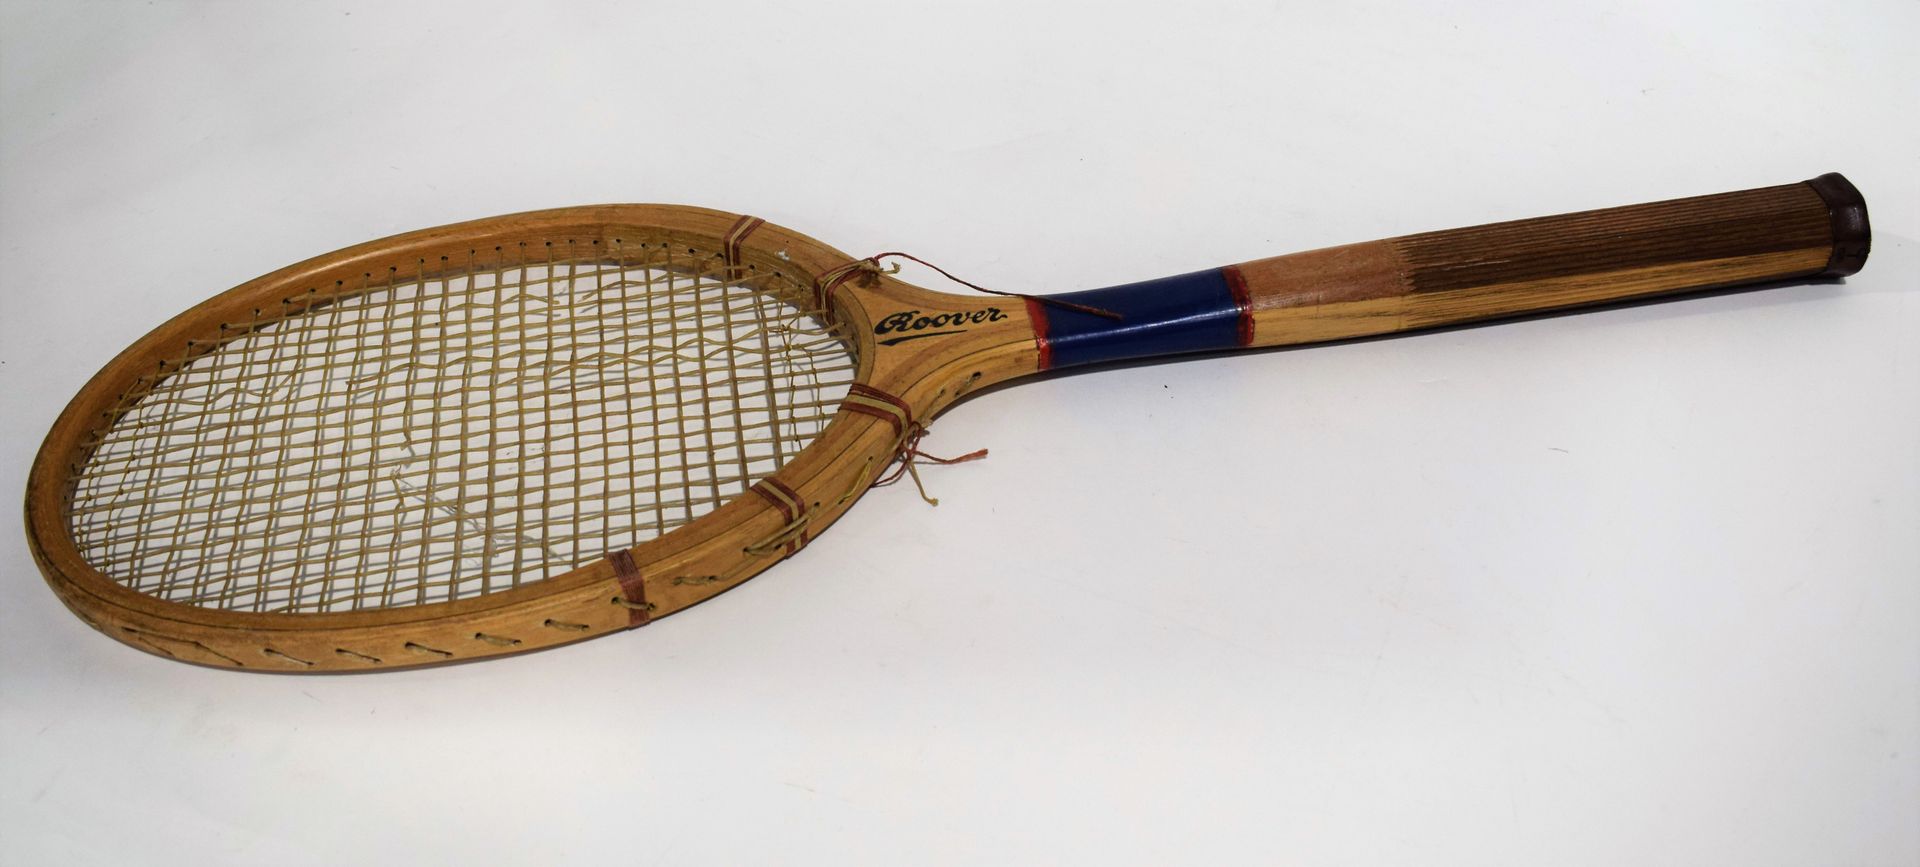 Null (运动/网球) 木制网球拍，带肠线和皮革手柄，品牌ROOVER，1950年代，长69厘米

|

木制网球拍，带肠线，手柄底部有皮革棱纹，品牌ROOV&hellip;